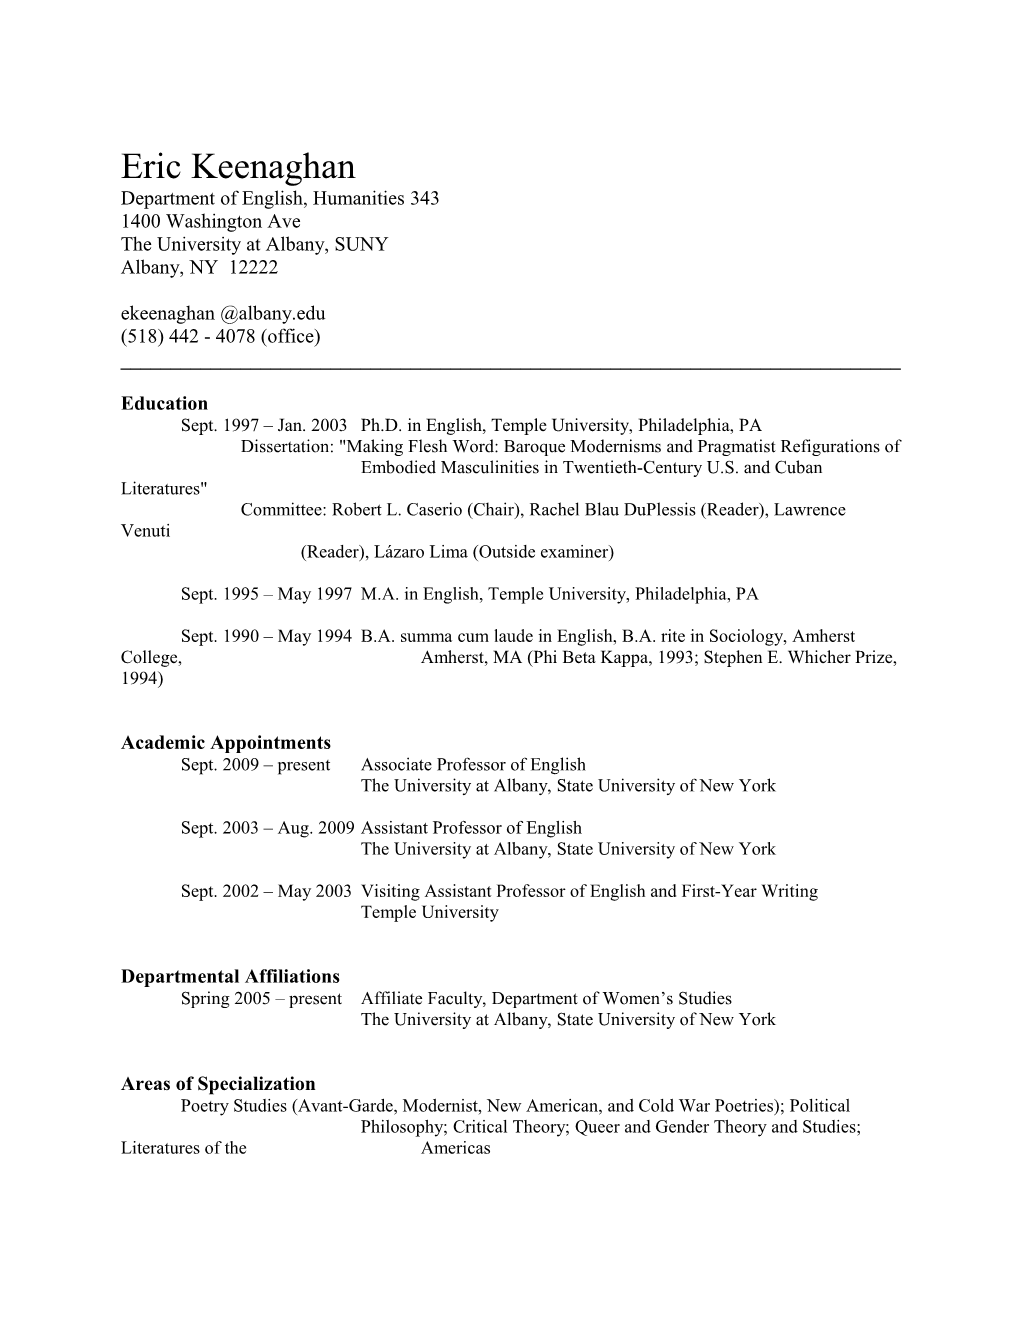 Eric Keenaghan Vita (Updated June 13, 2014)